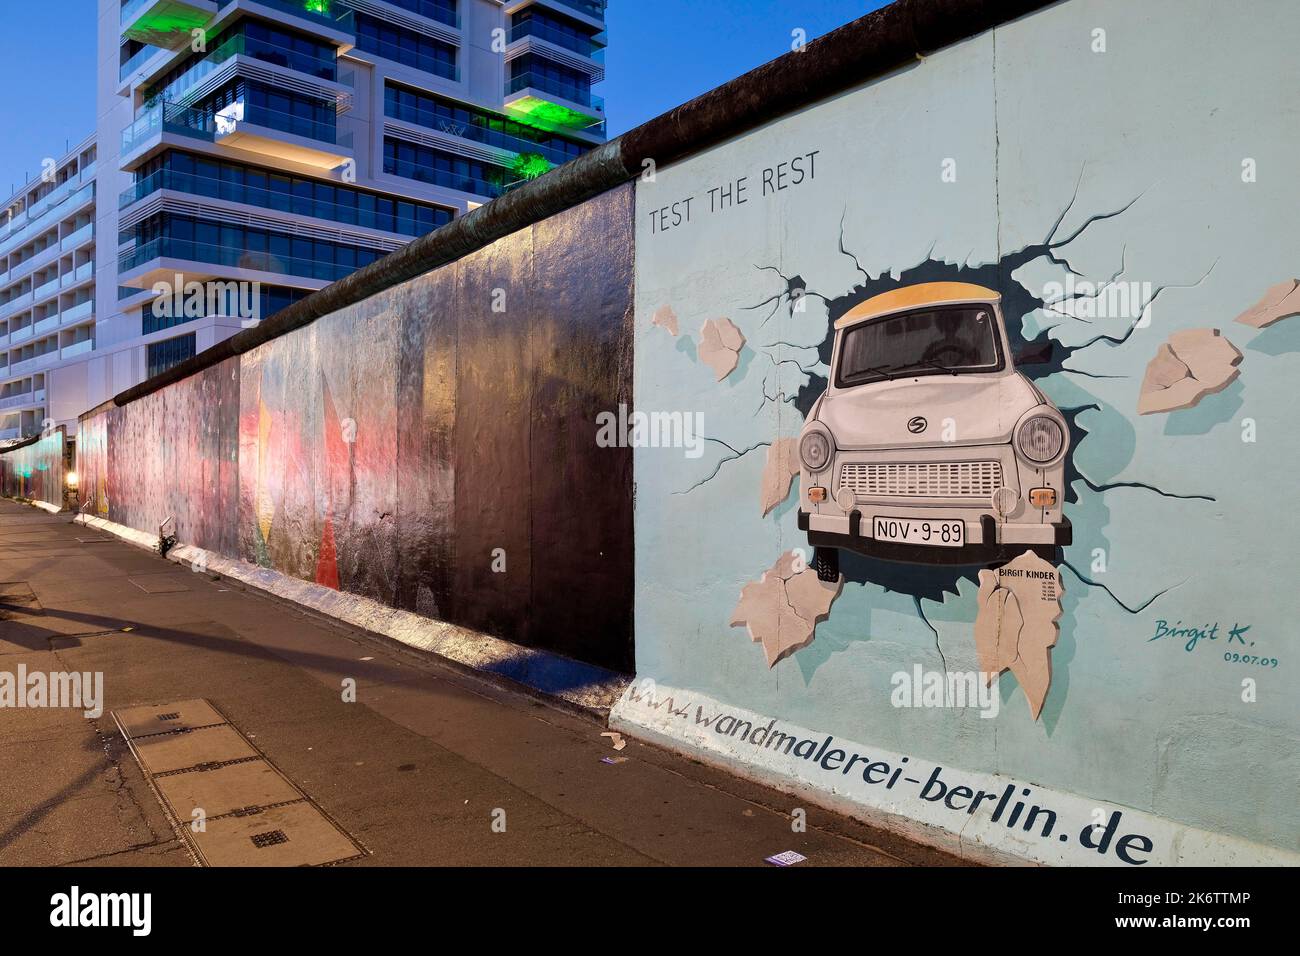 Murale sul resto del muro di Berlino con il test di stress cardiaco (Test the rest), Trabi durchbricht Mauer, artista Birgit Kinder, East Side Gallery Foto Stock